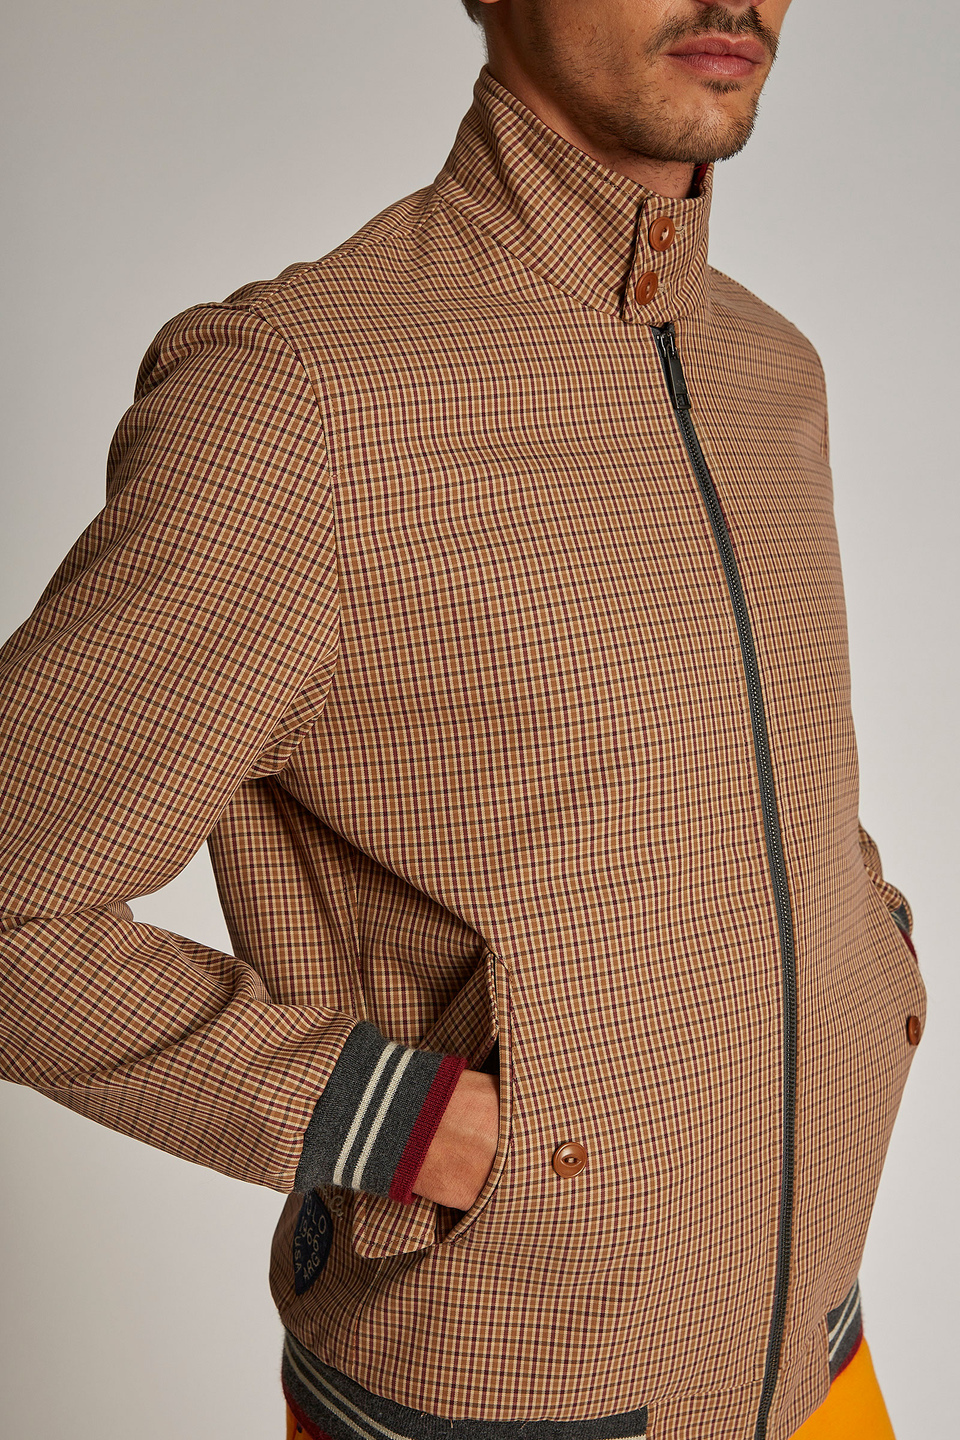 Veste homme en coton, coupe classique et fermeture zippée sur le devant - La Martina - Official Online Shop